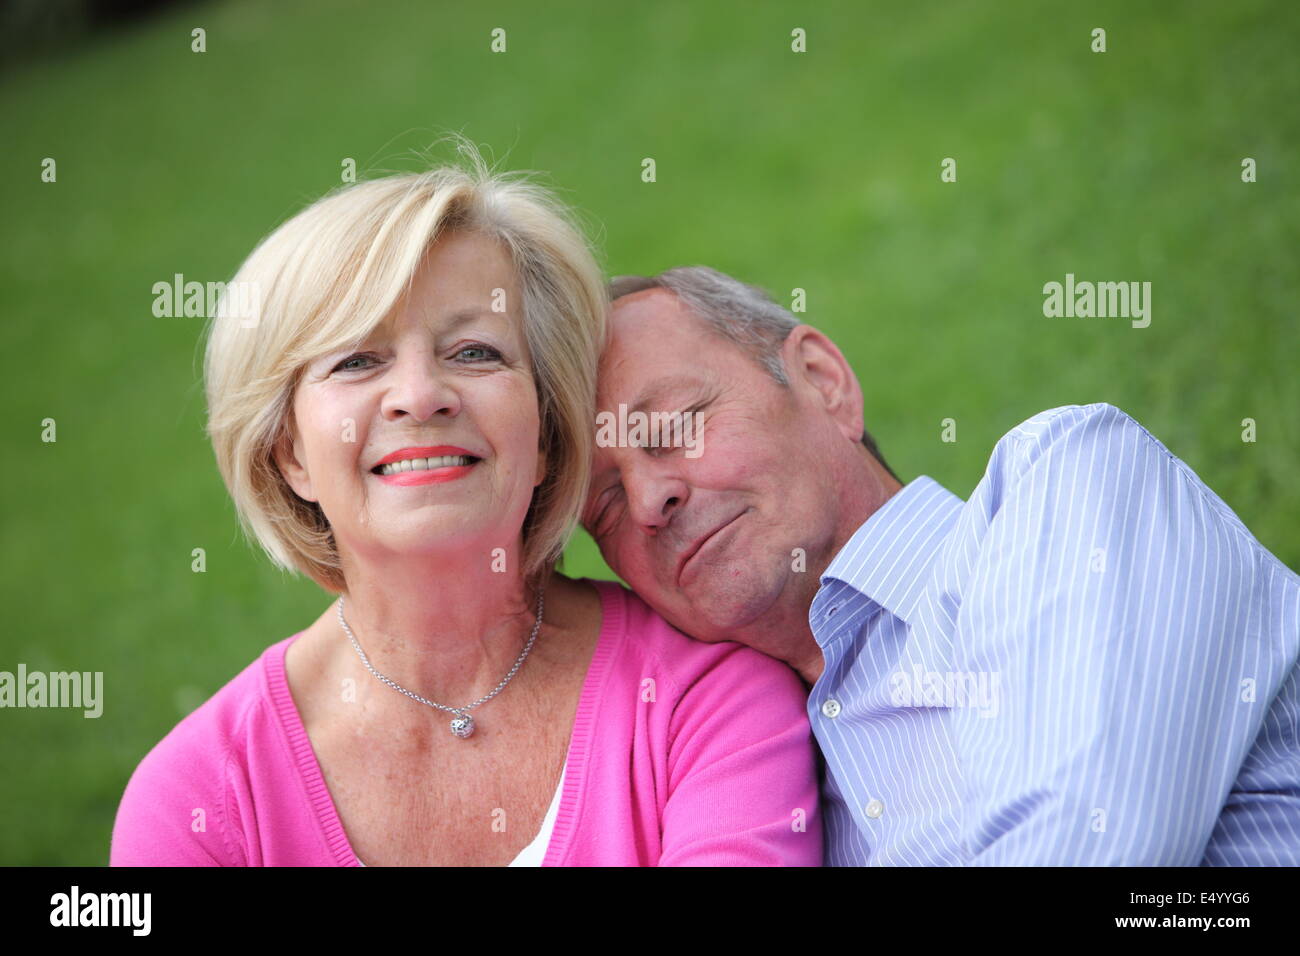 Loving senior husband and wife Stock Photo